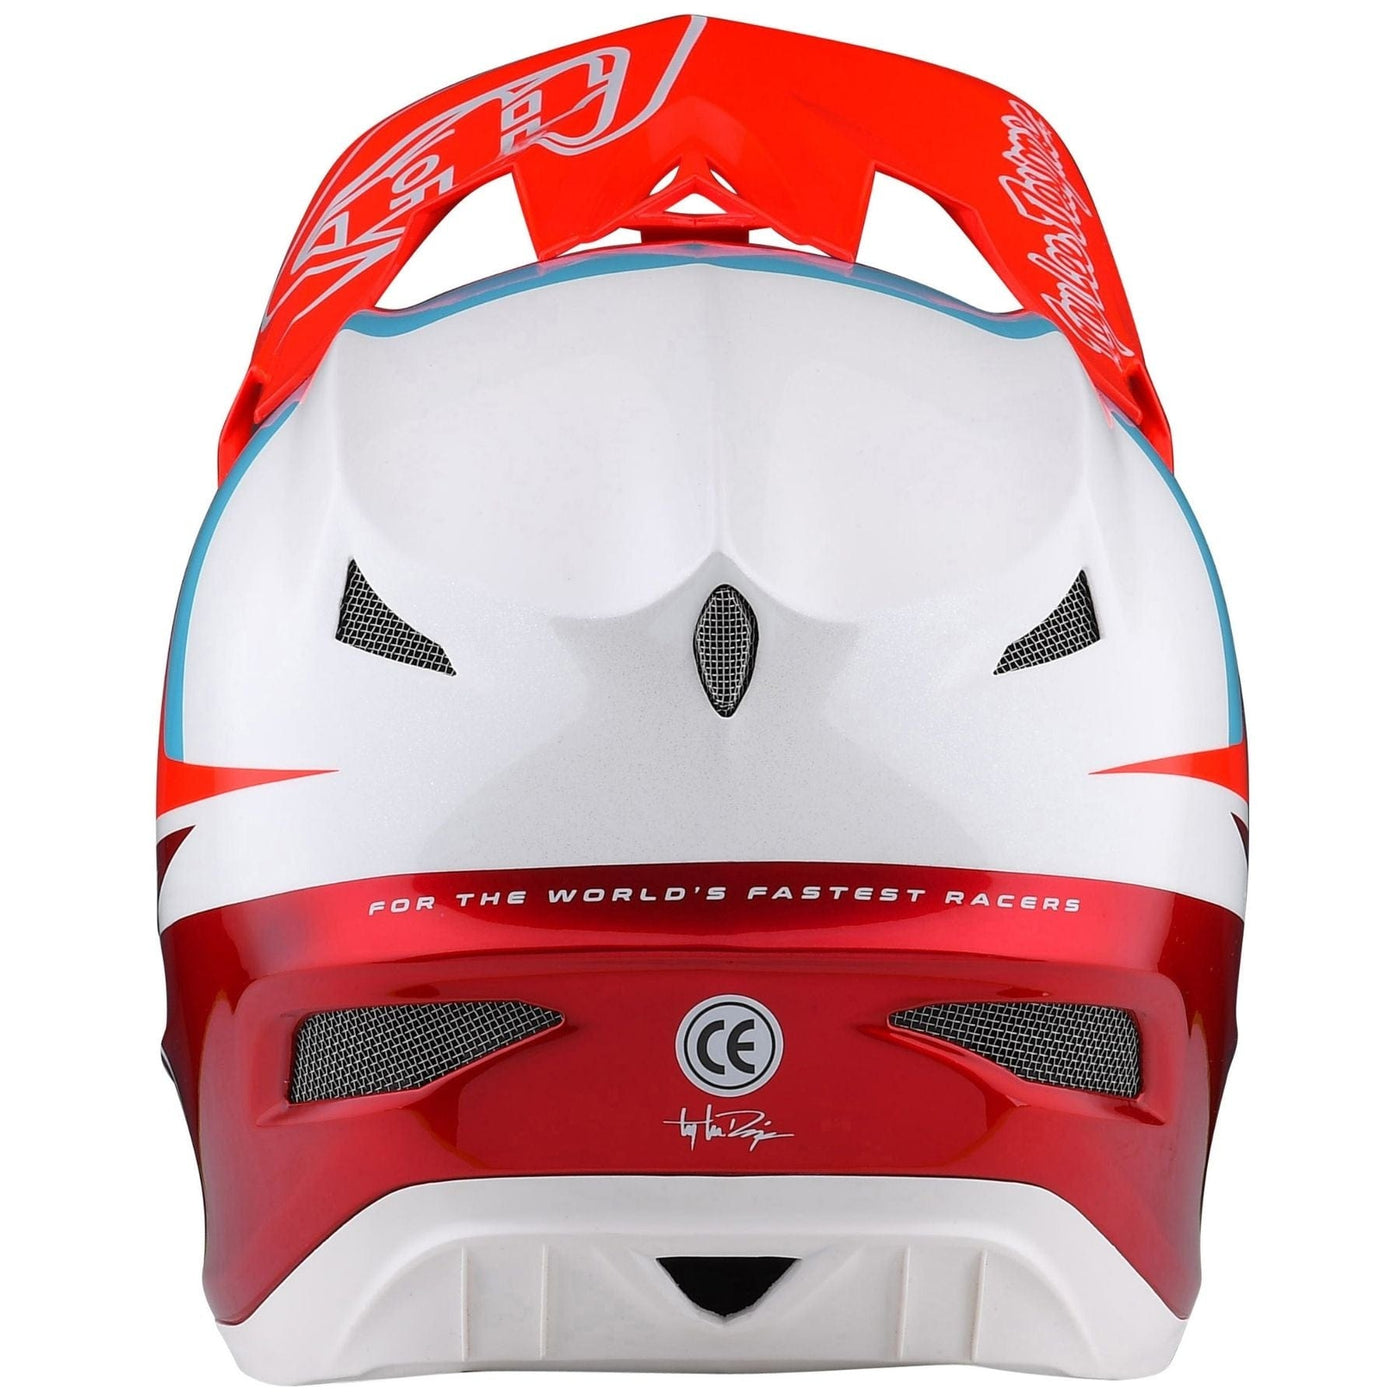 Full-face dh MTB helmets - D3